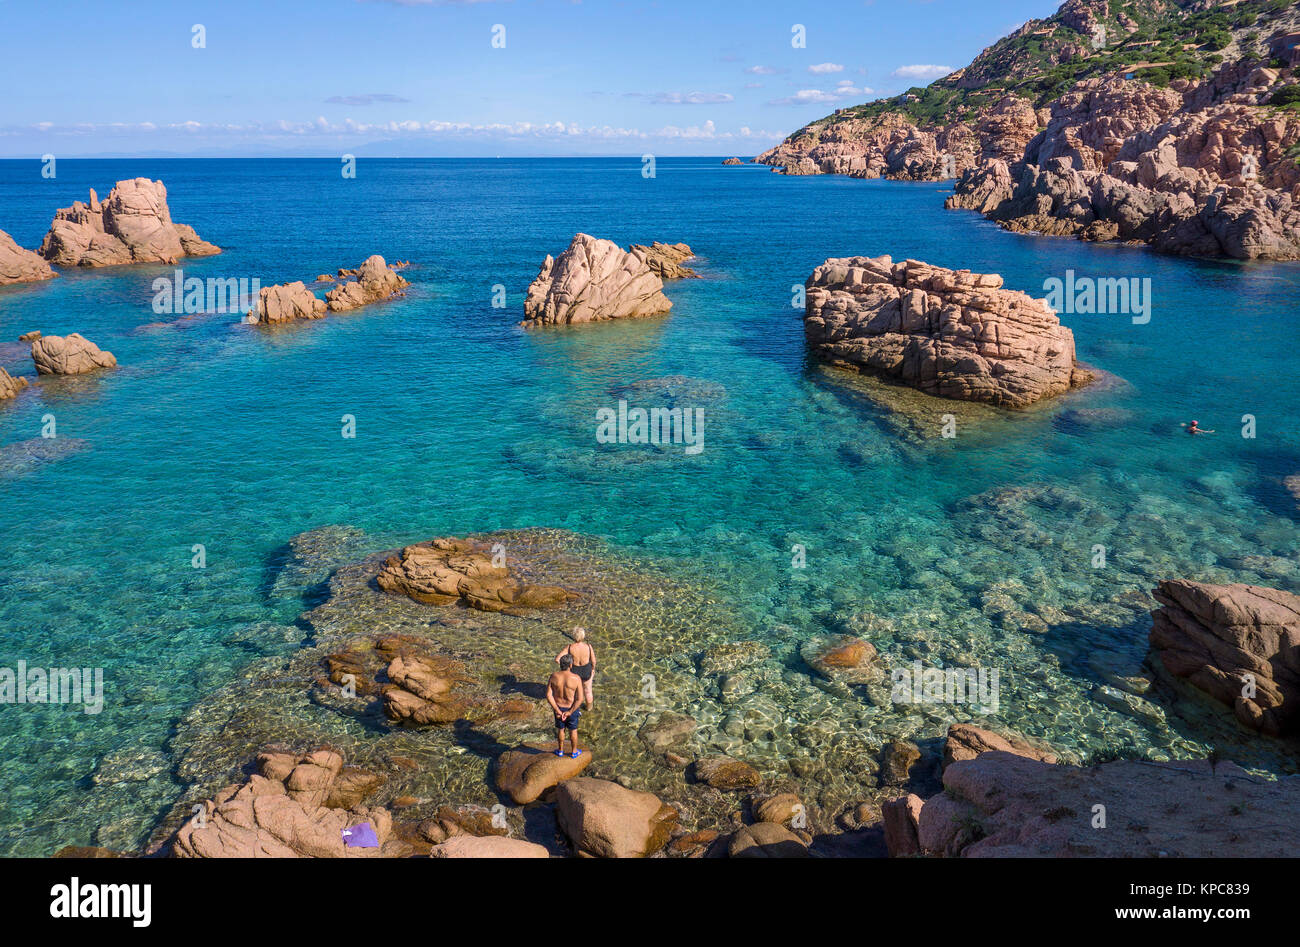 Bathing beach at porphyry rocks, coast landscape at Costa Paradiso, Sardinia, Italy, Mediterranean  sea, Europe Stock Photo